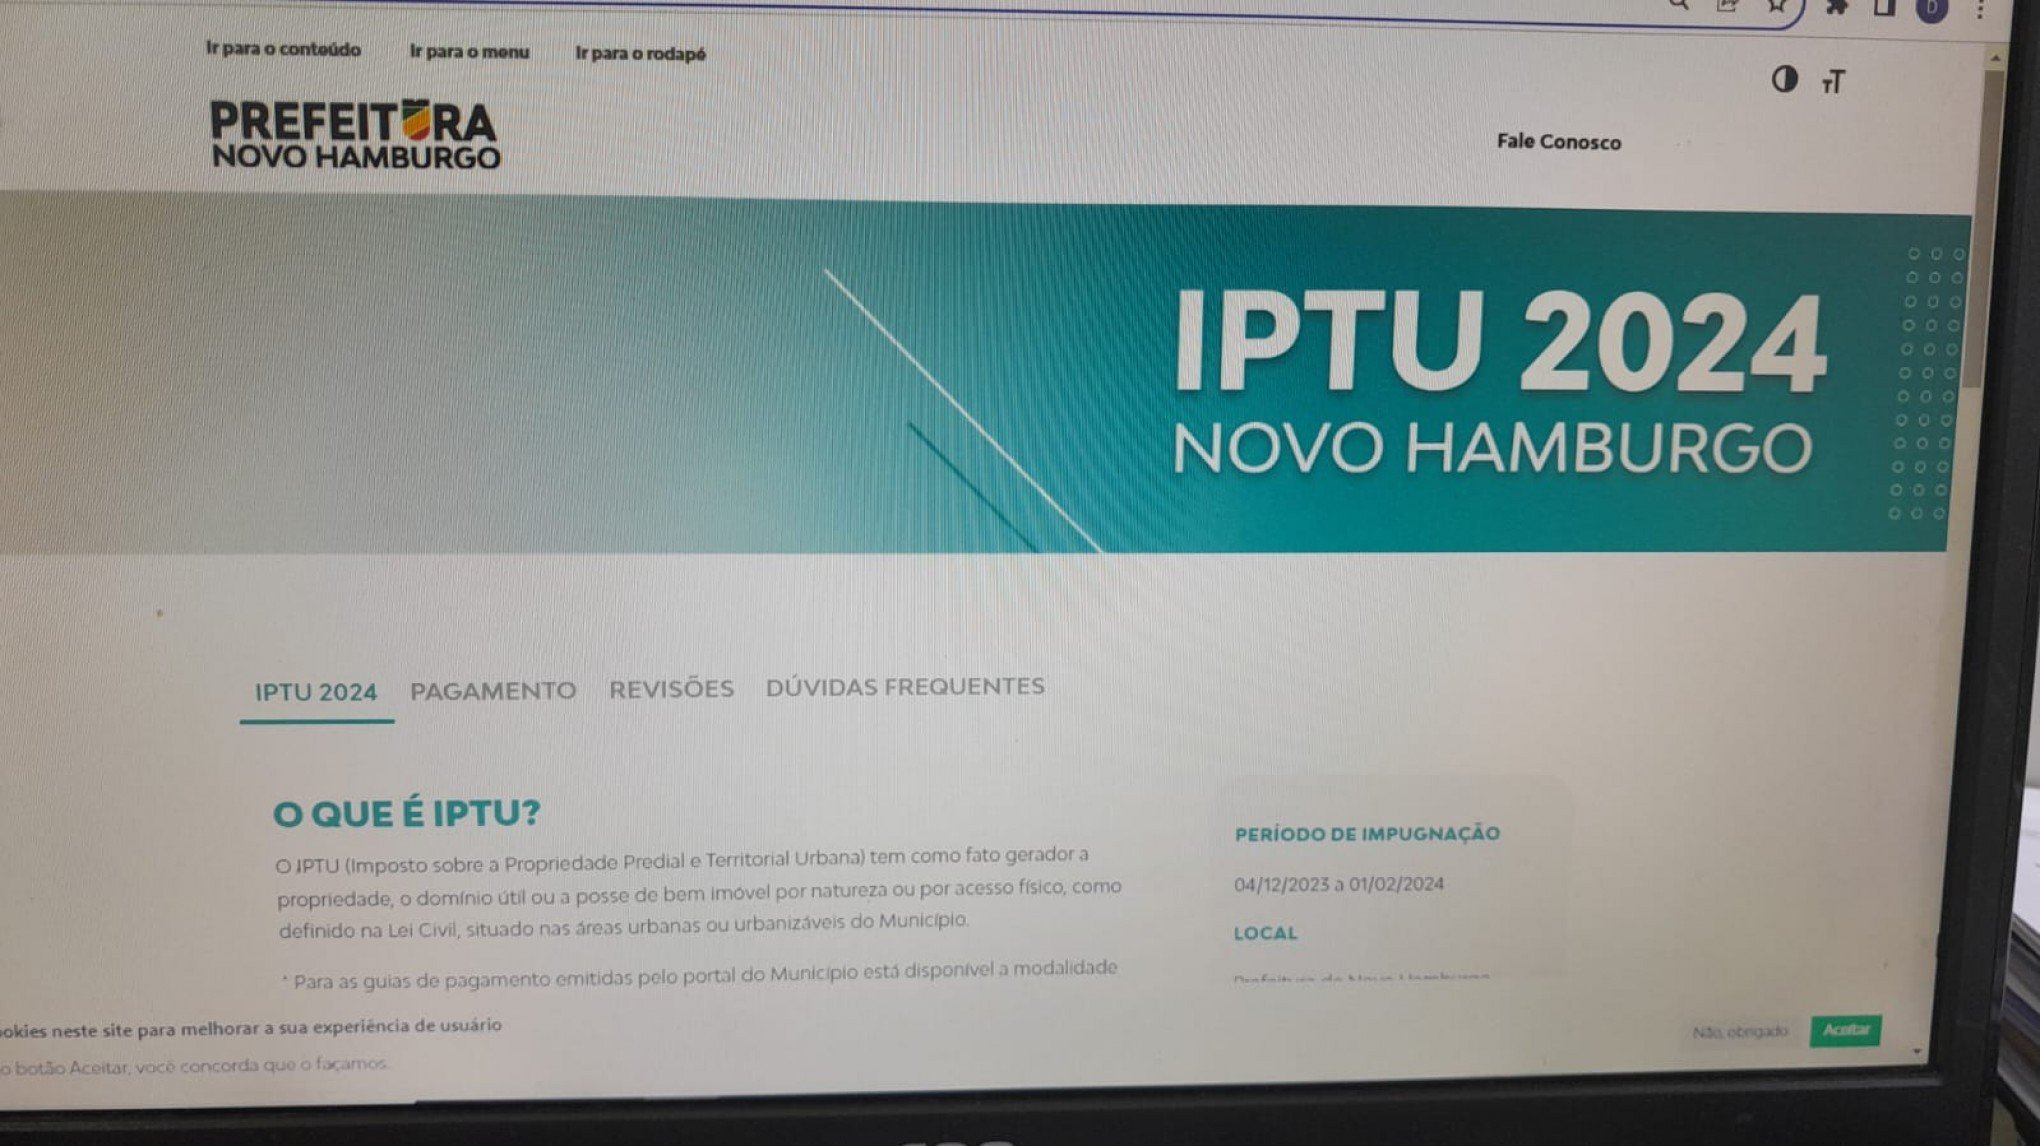 Ainda é possível garantir desconto no IPTU em Novo Hamburgo?